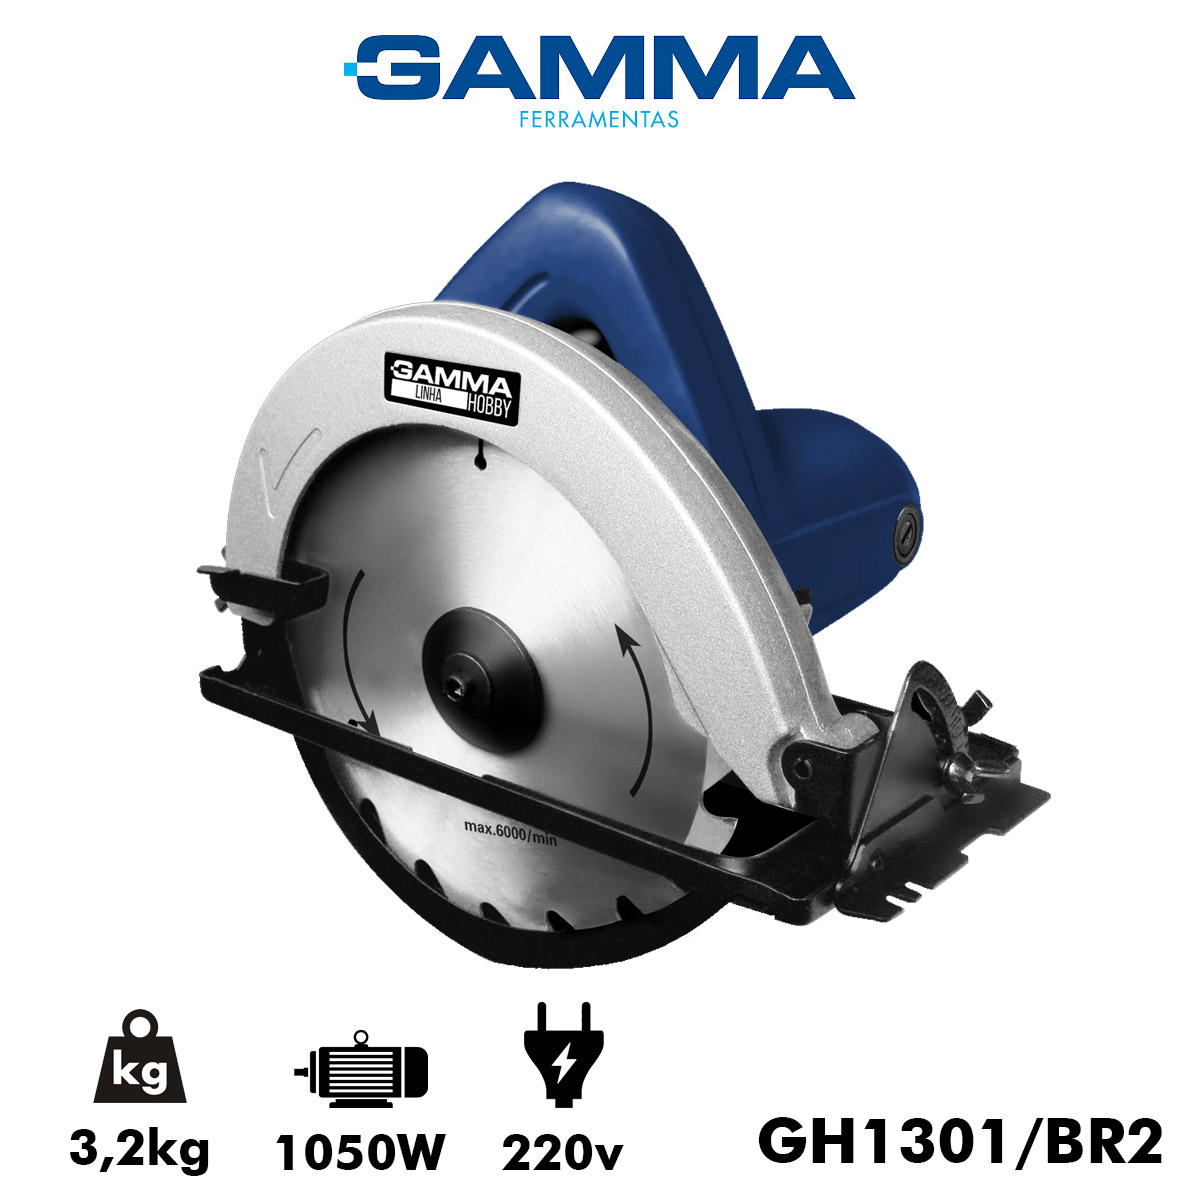 Serra Circular Gamma Elétrica Hobby 1050 Watts 7.1/4" 185mm 220v GH1301/BR1 Poliparts